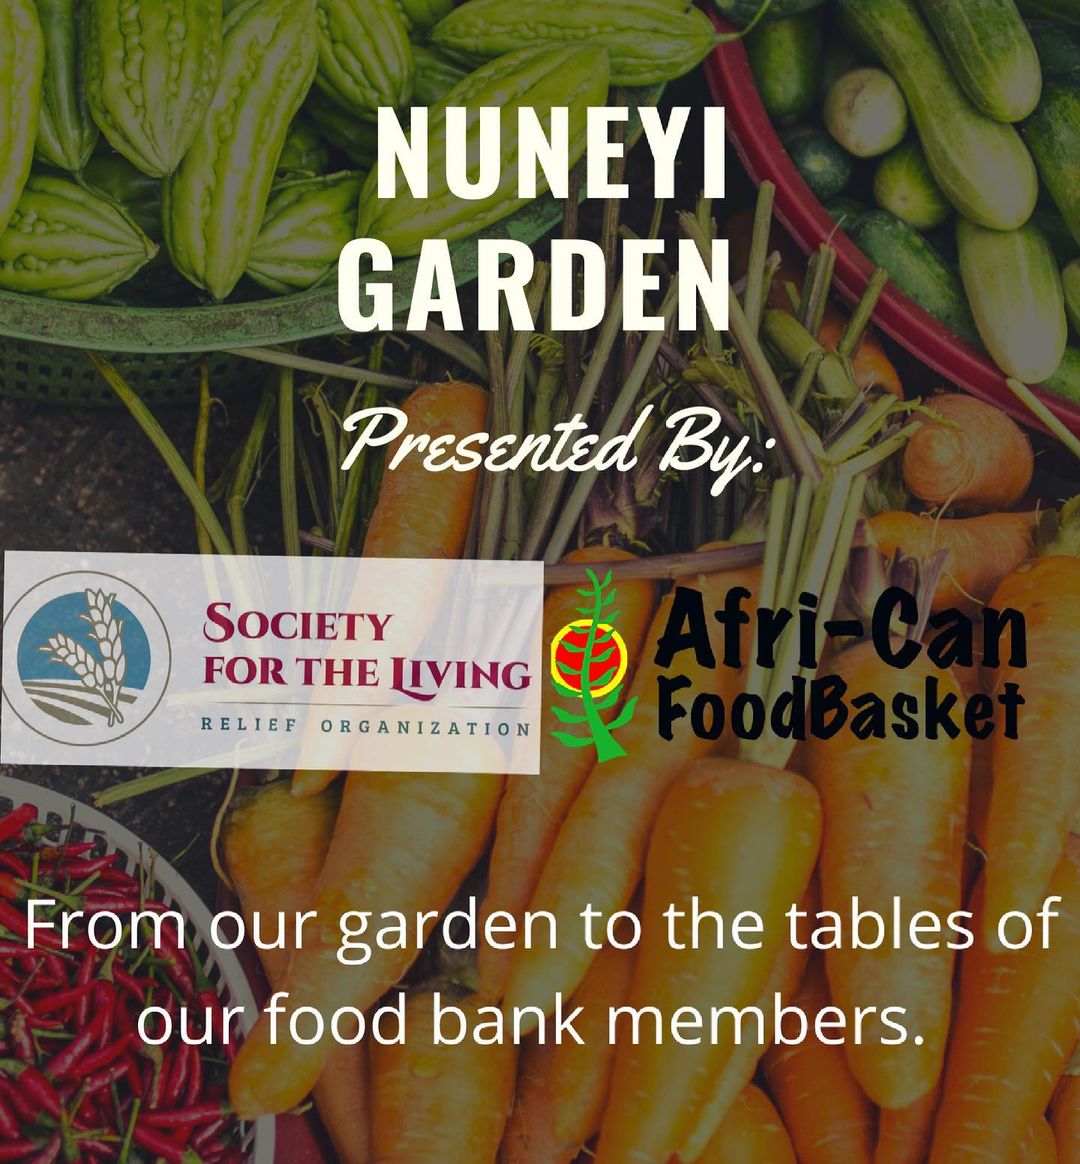 NuNeYi Garden in collaboration with @africanfoodbskt